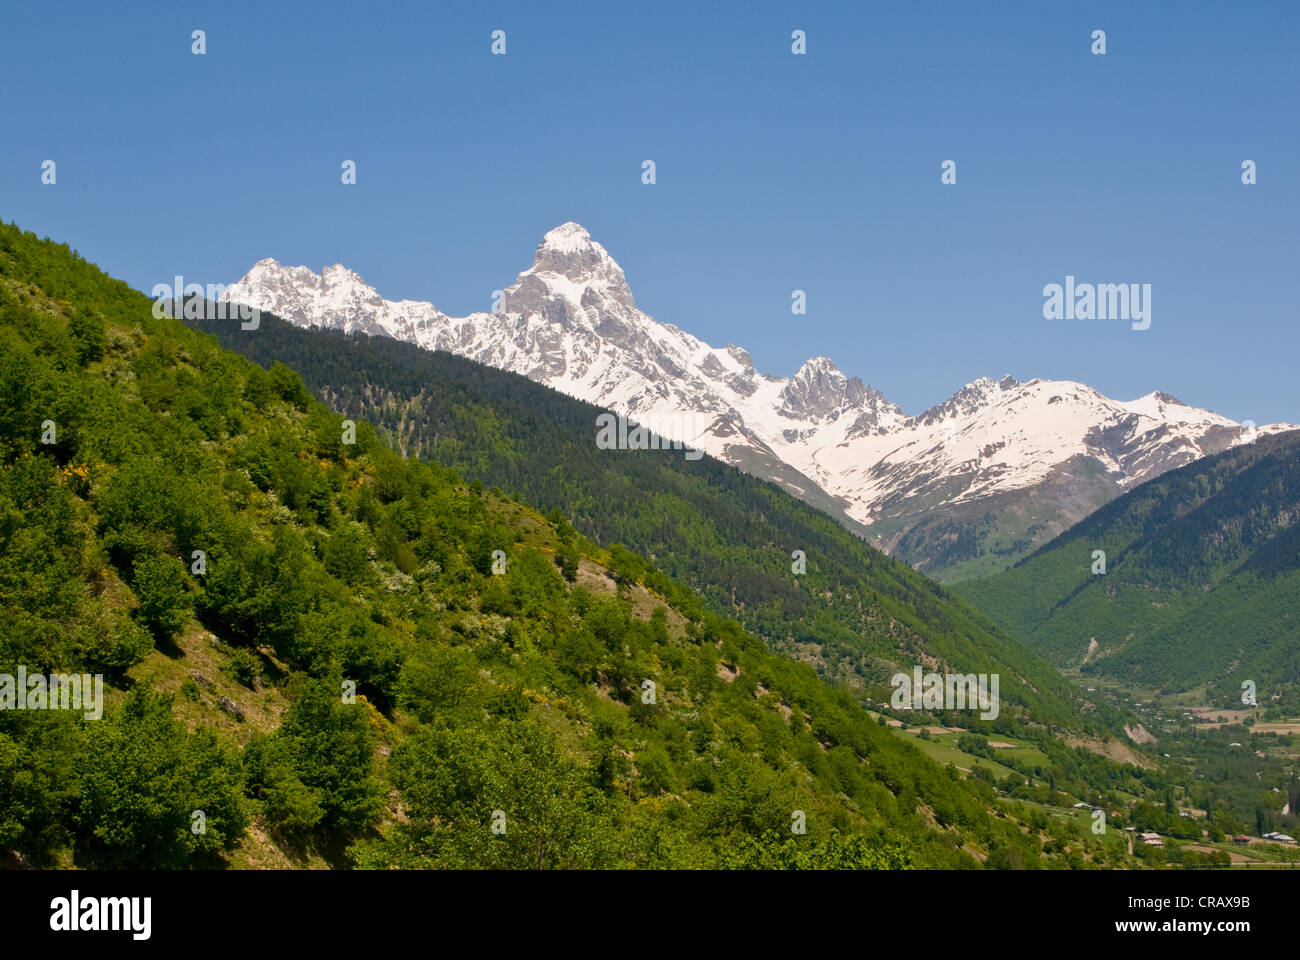 Mount Ushba, Svaneti province, Georgia, Middle East Stock Photo